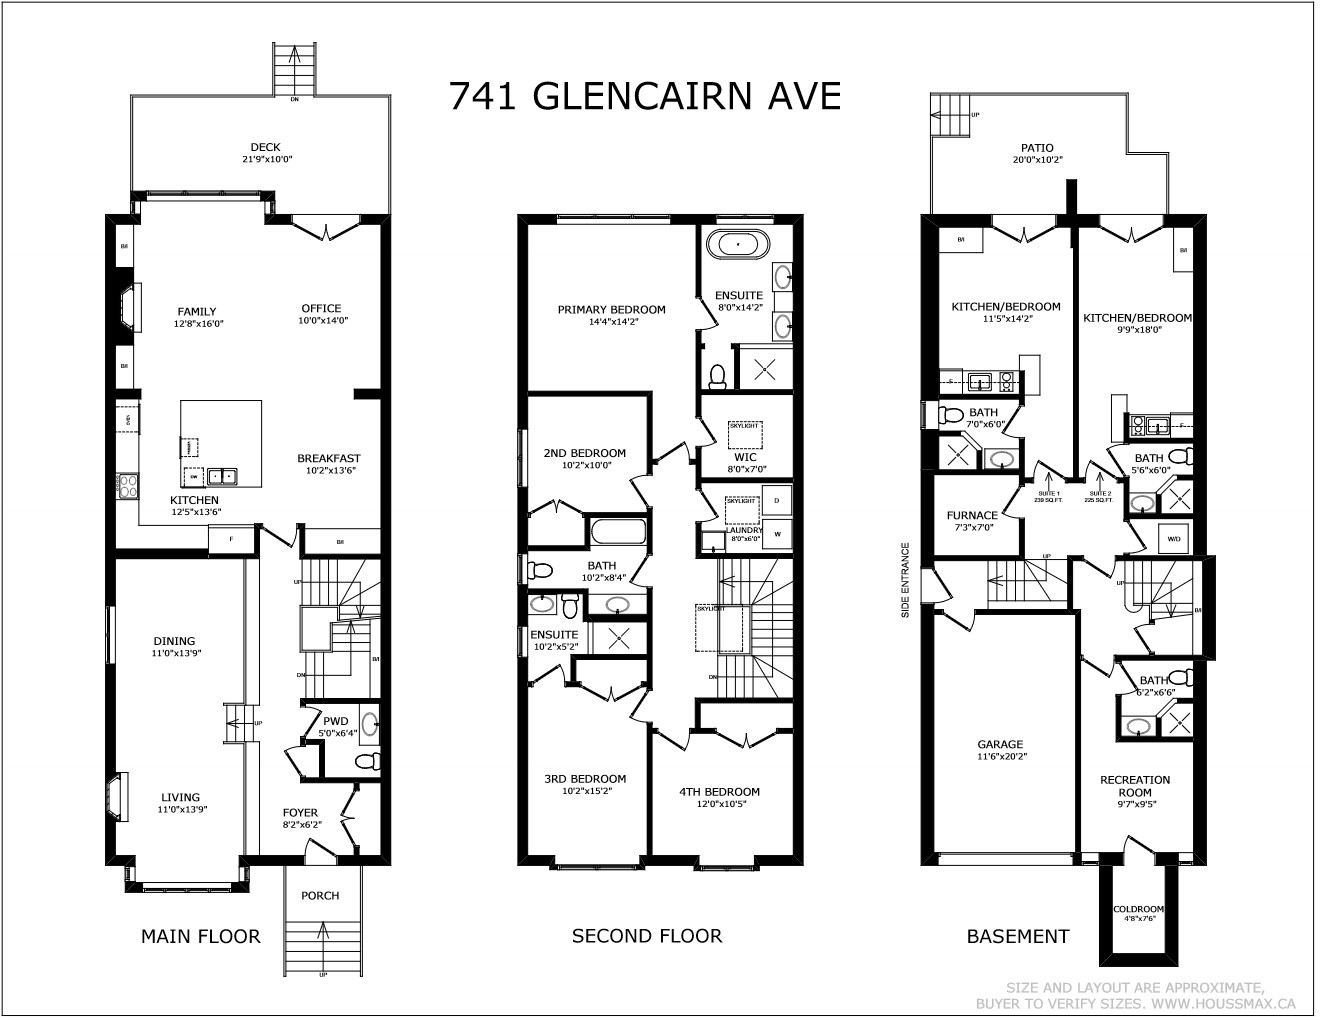 40. 741 Glencairn Ave Floor Plans